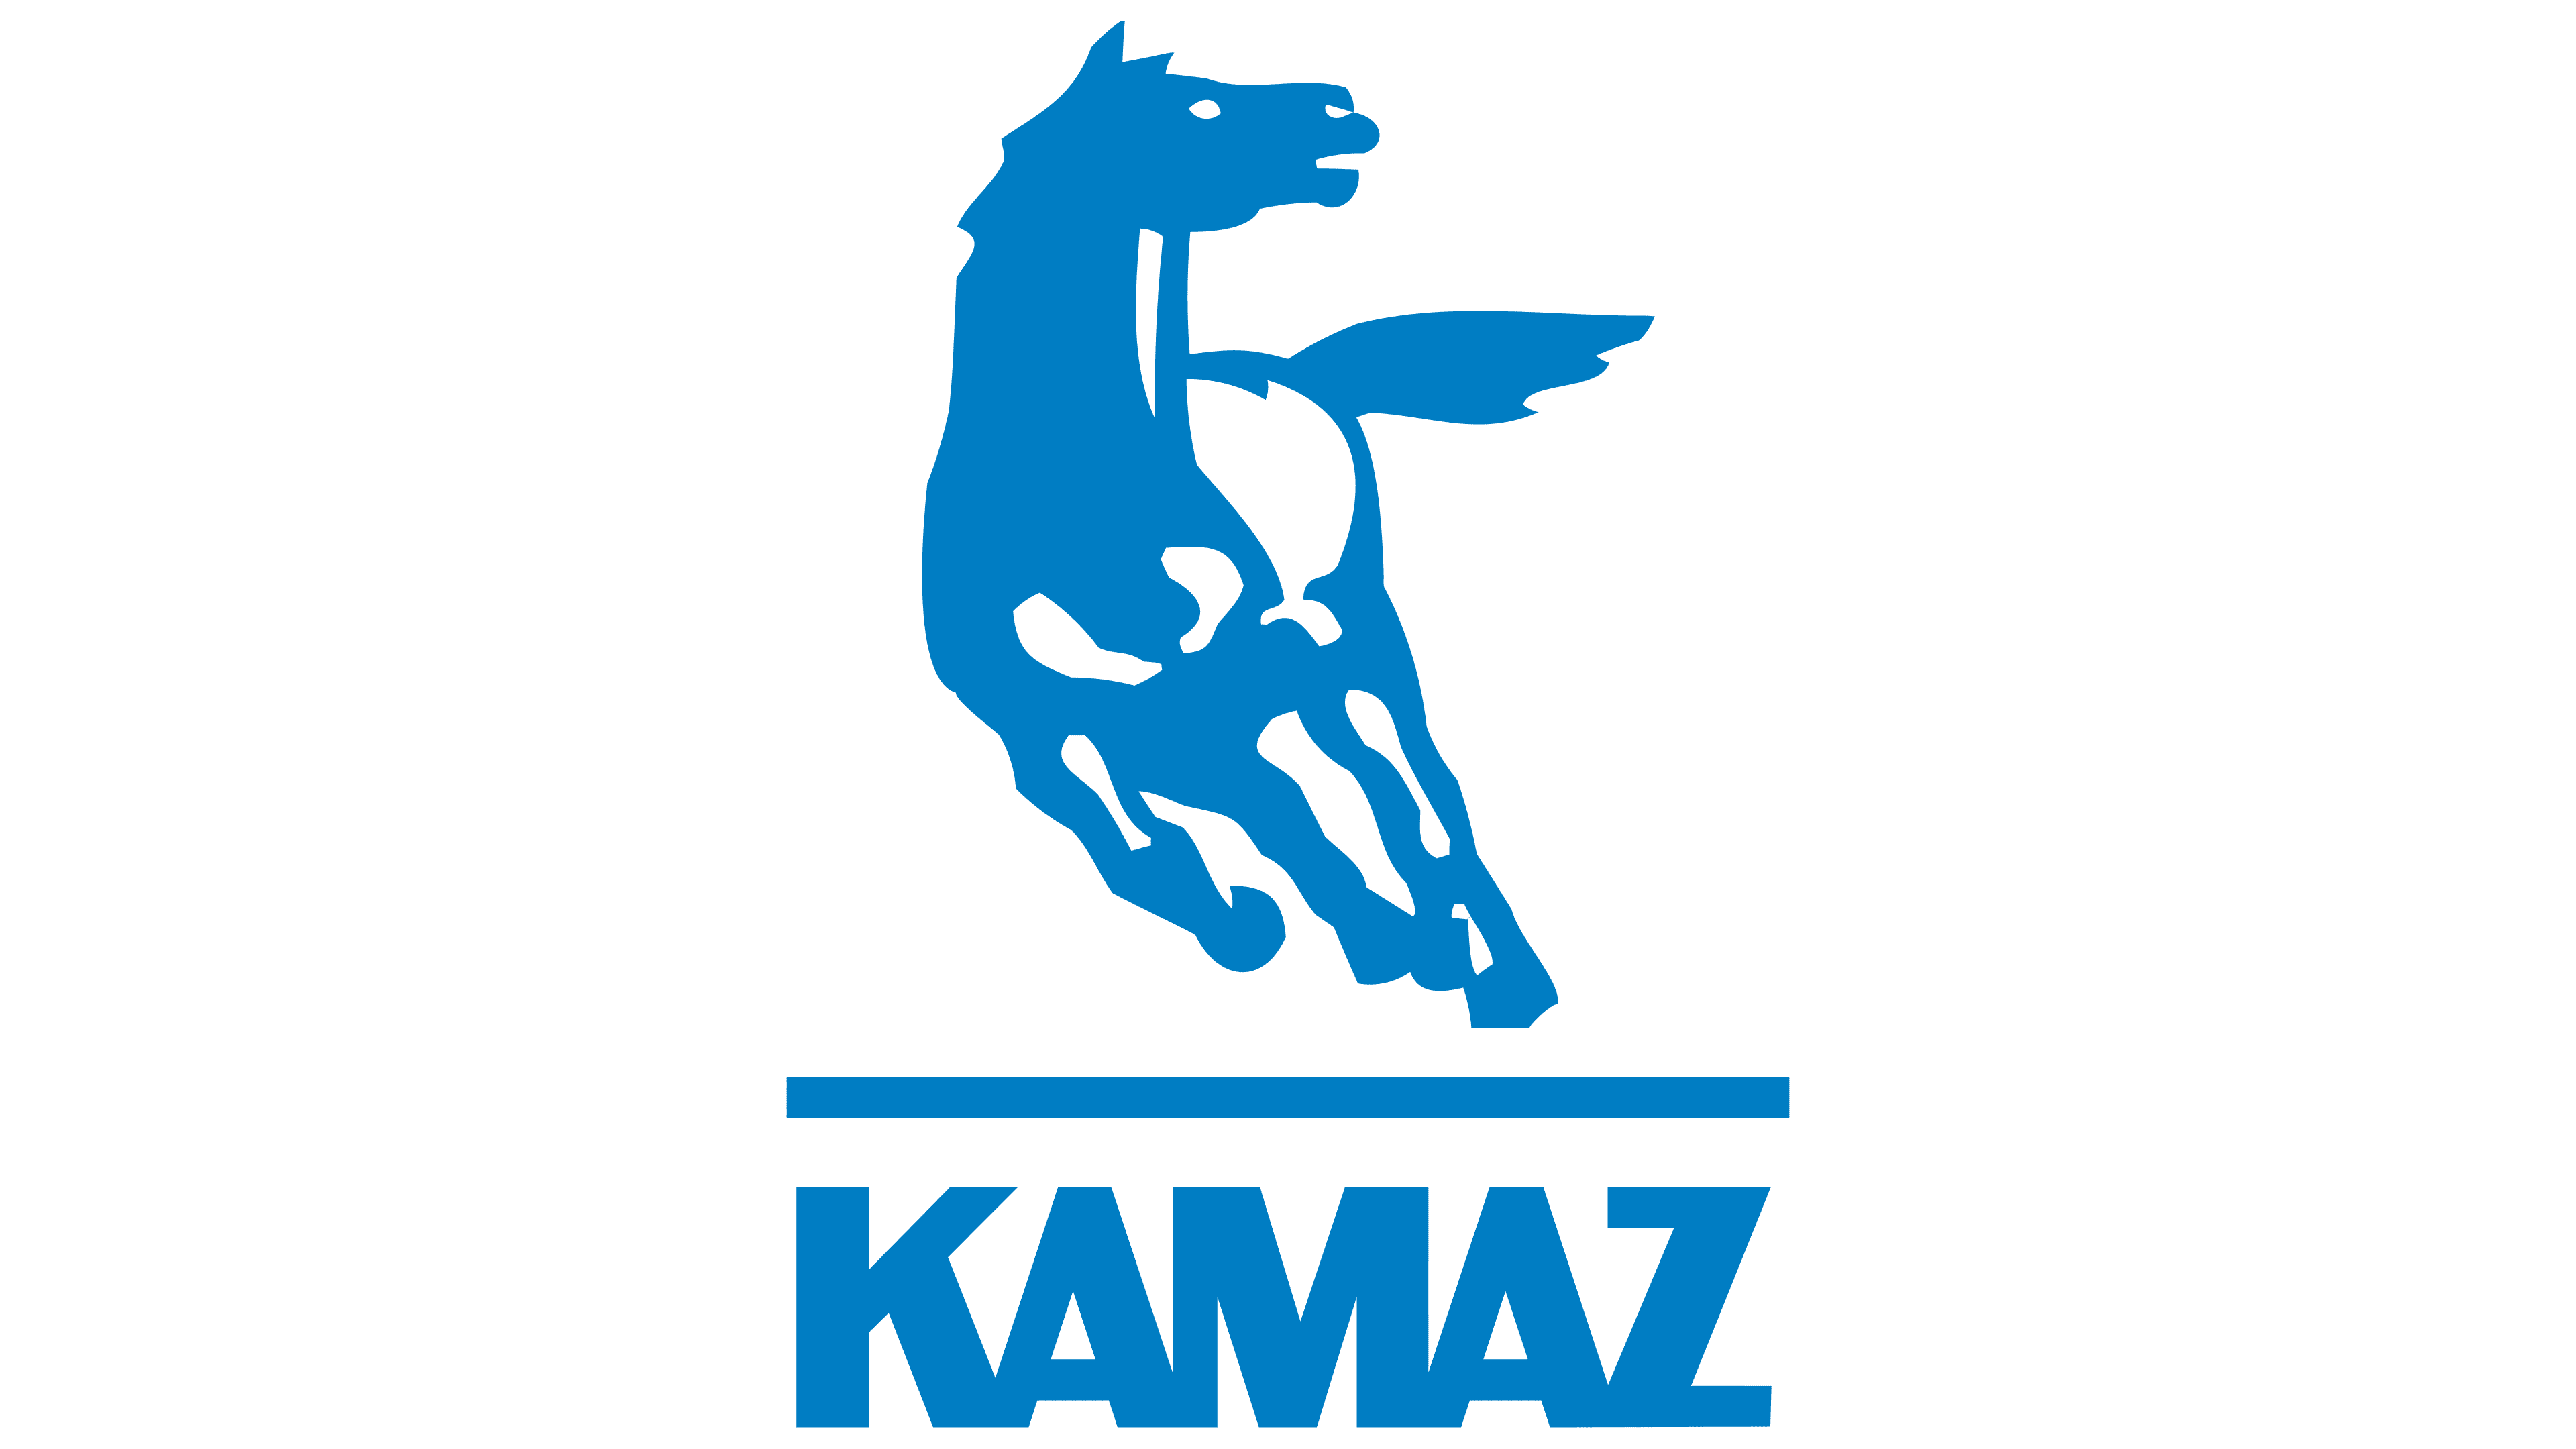 KAMAZ Transparent Logo PNG